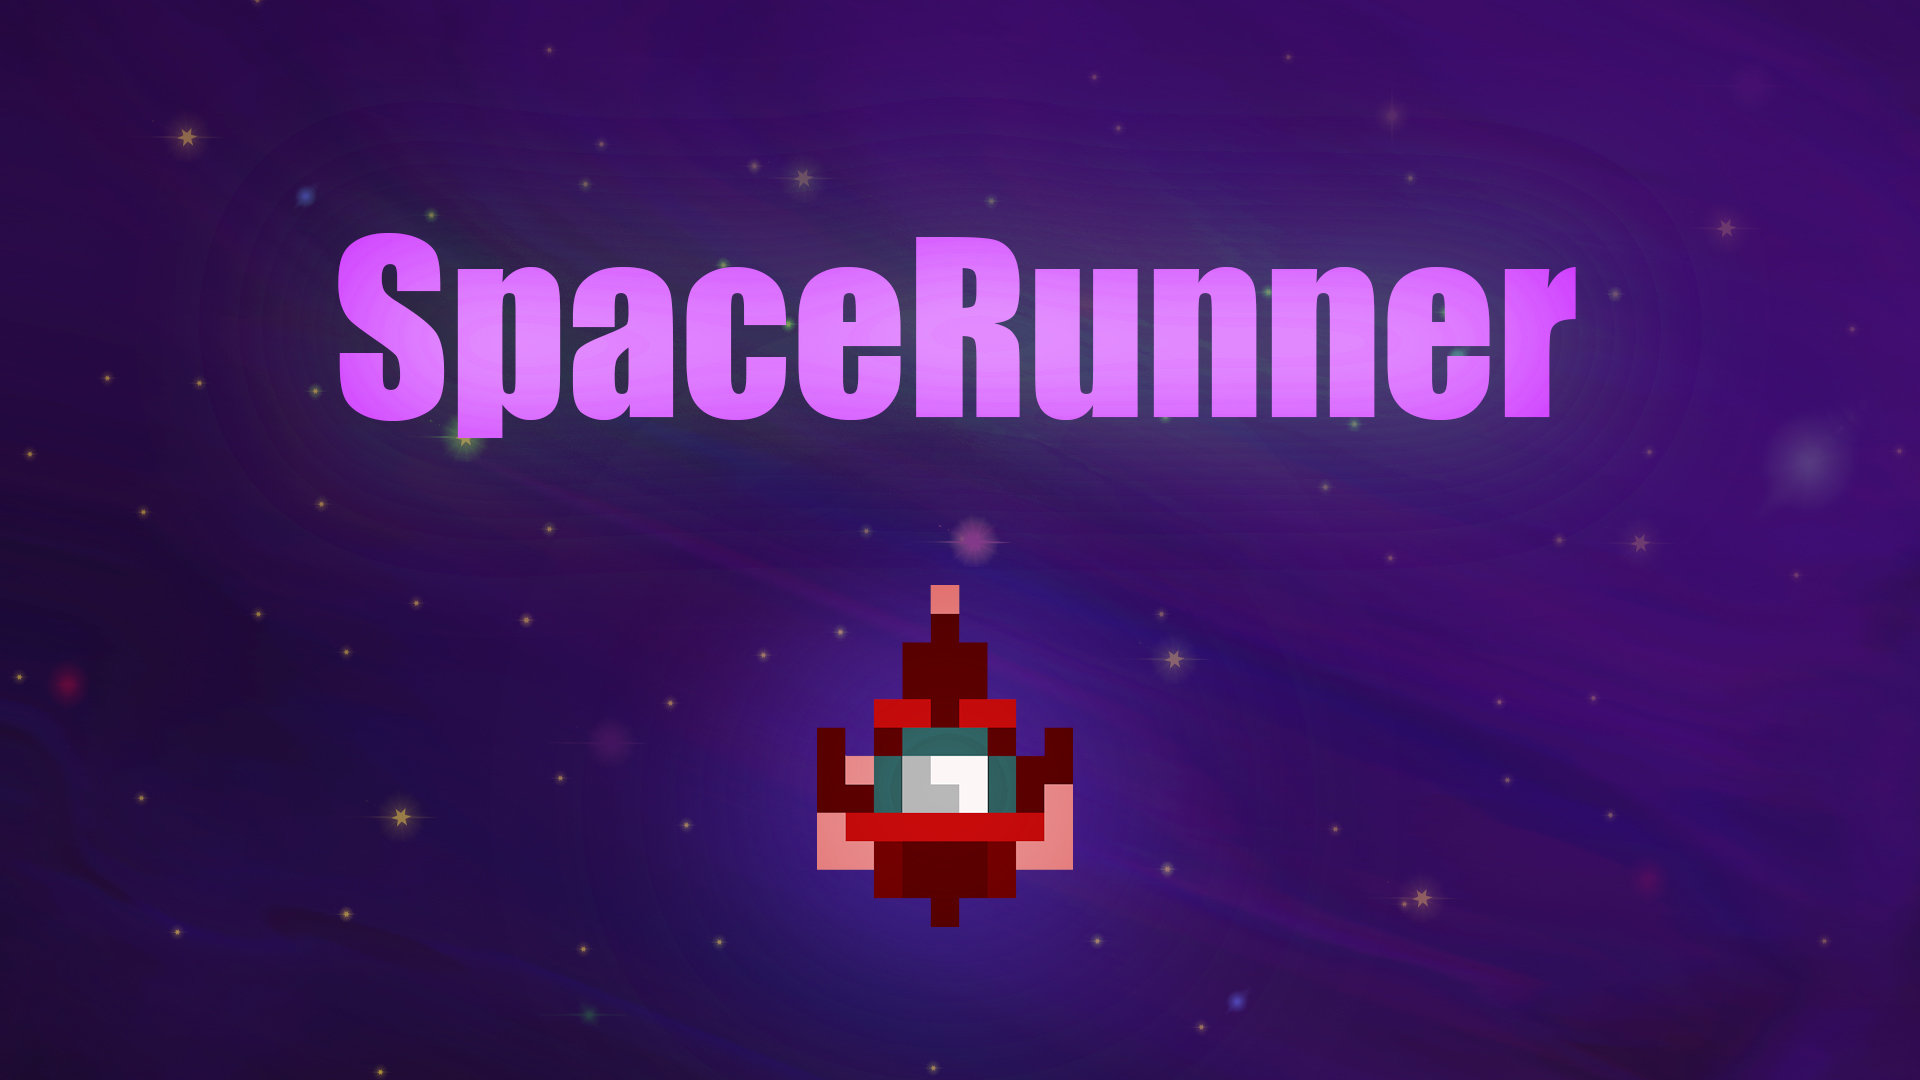 SpaceRunner